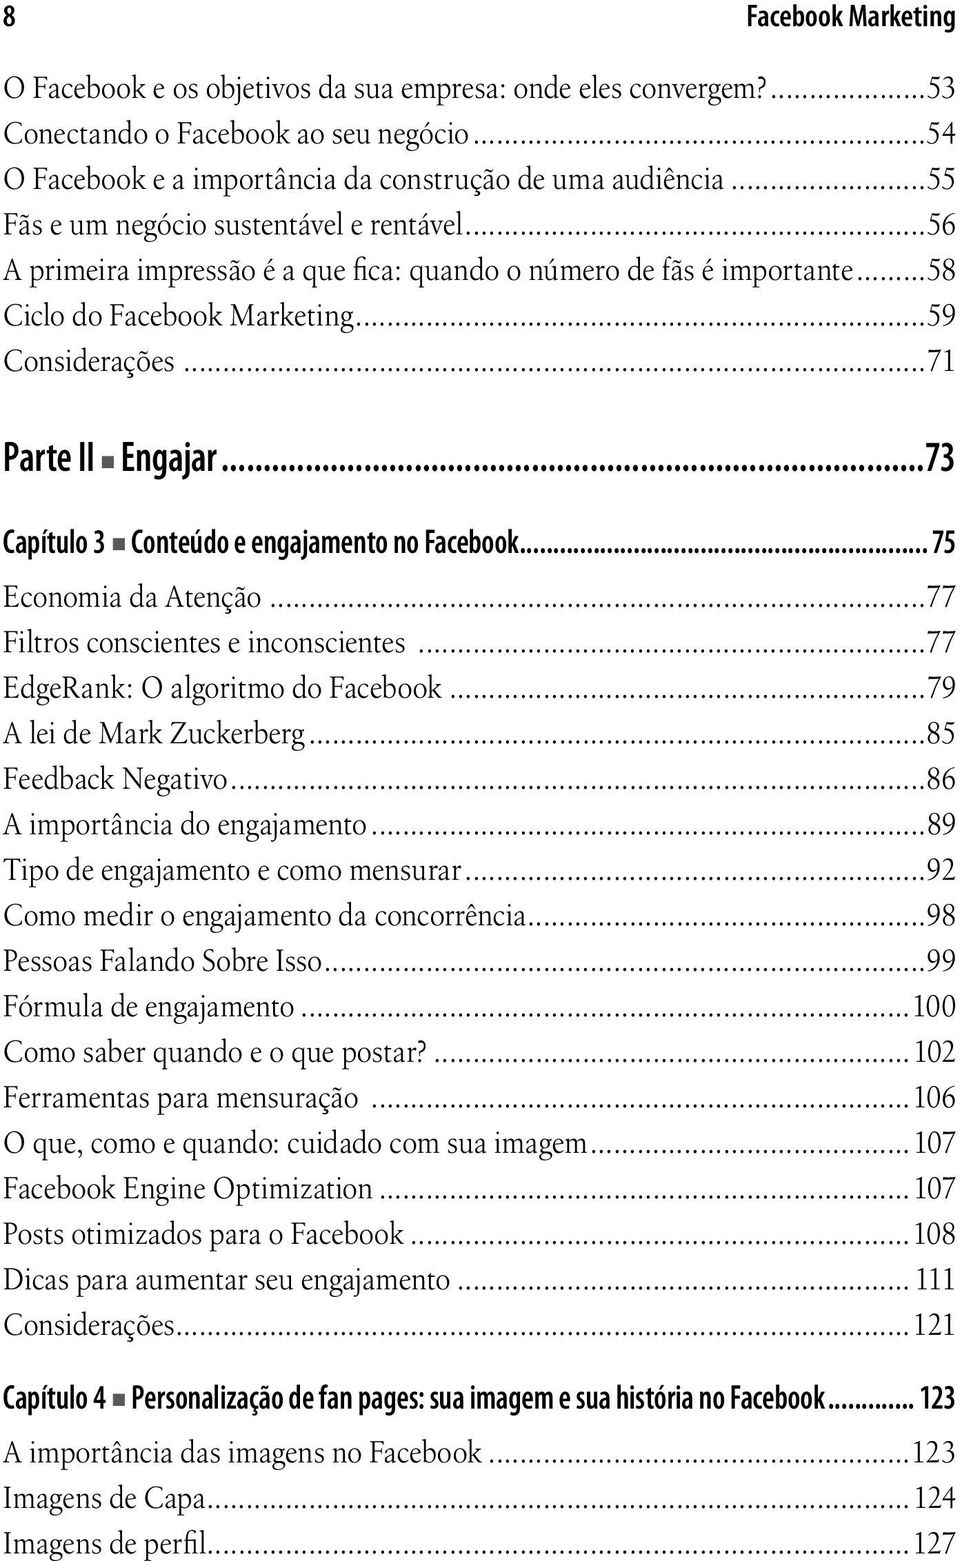 ..73 Capítulo 3 Conteúdo e engajamento no Facebook... 75 Economia da Atenção...77 Filtros conscientes e inconscientes...77 EdgeRank: O algoritmo do Facebook...79 A lei de Mark Zuckerberg.